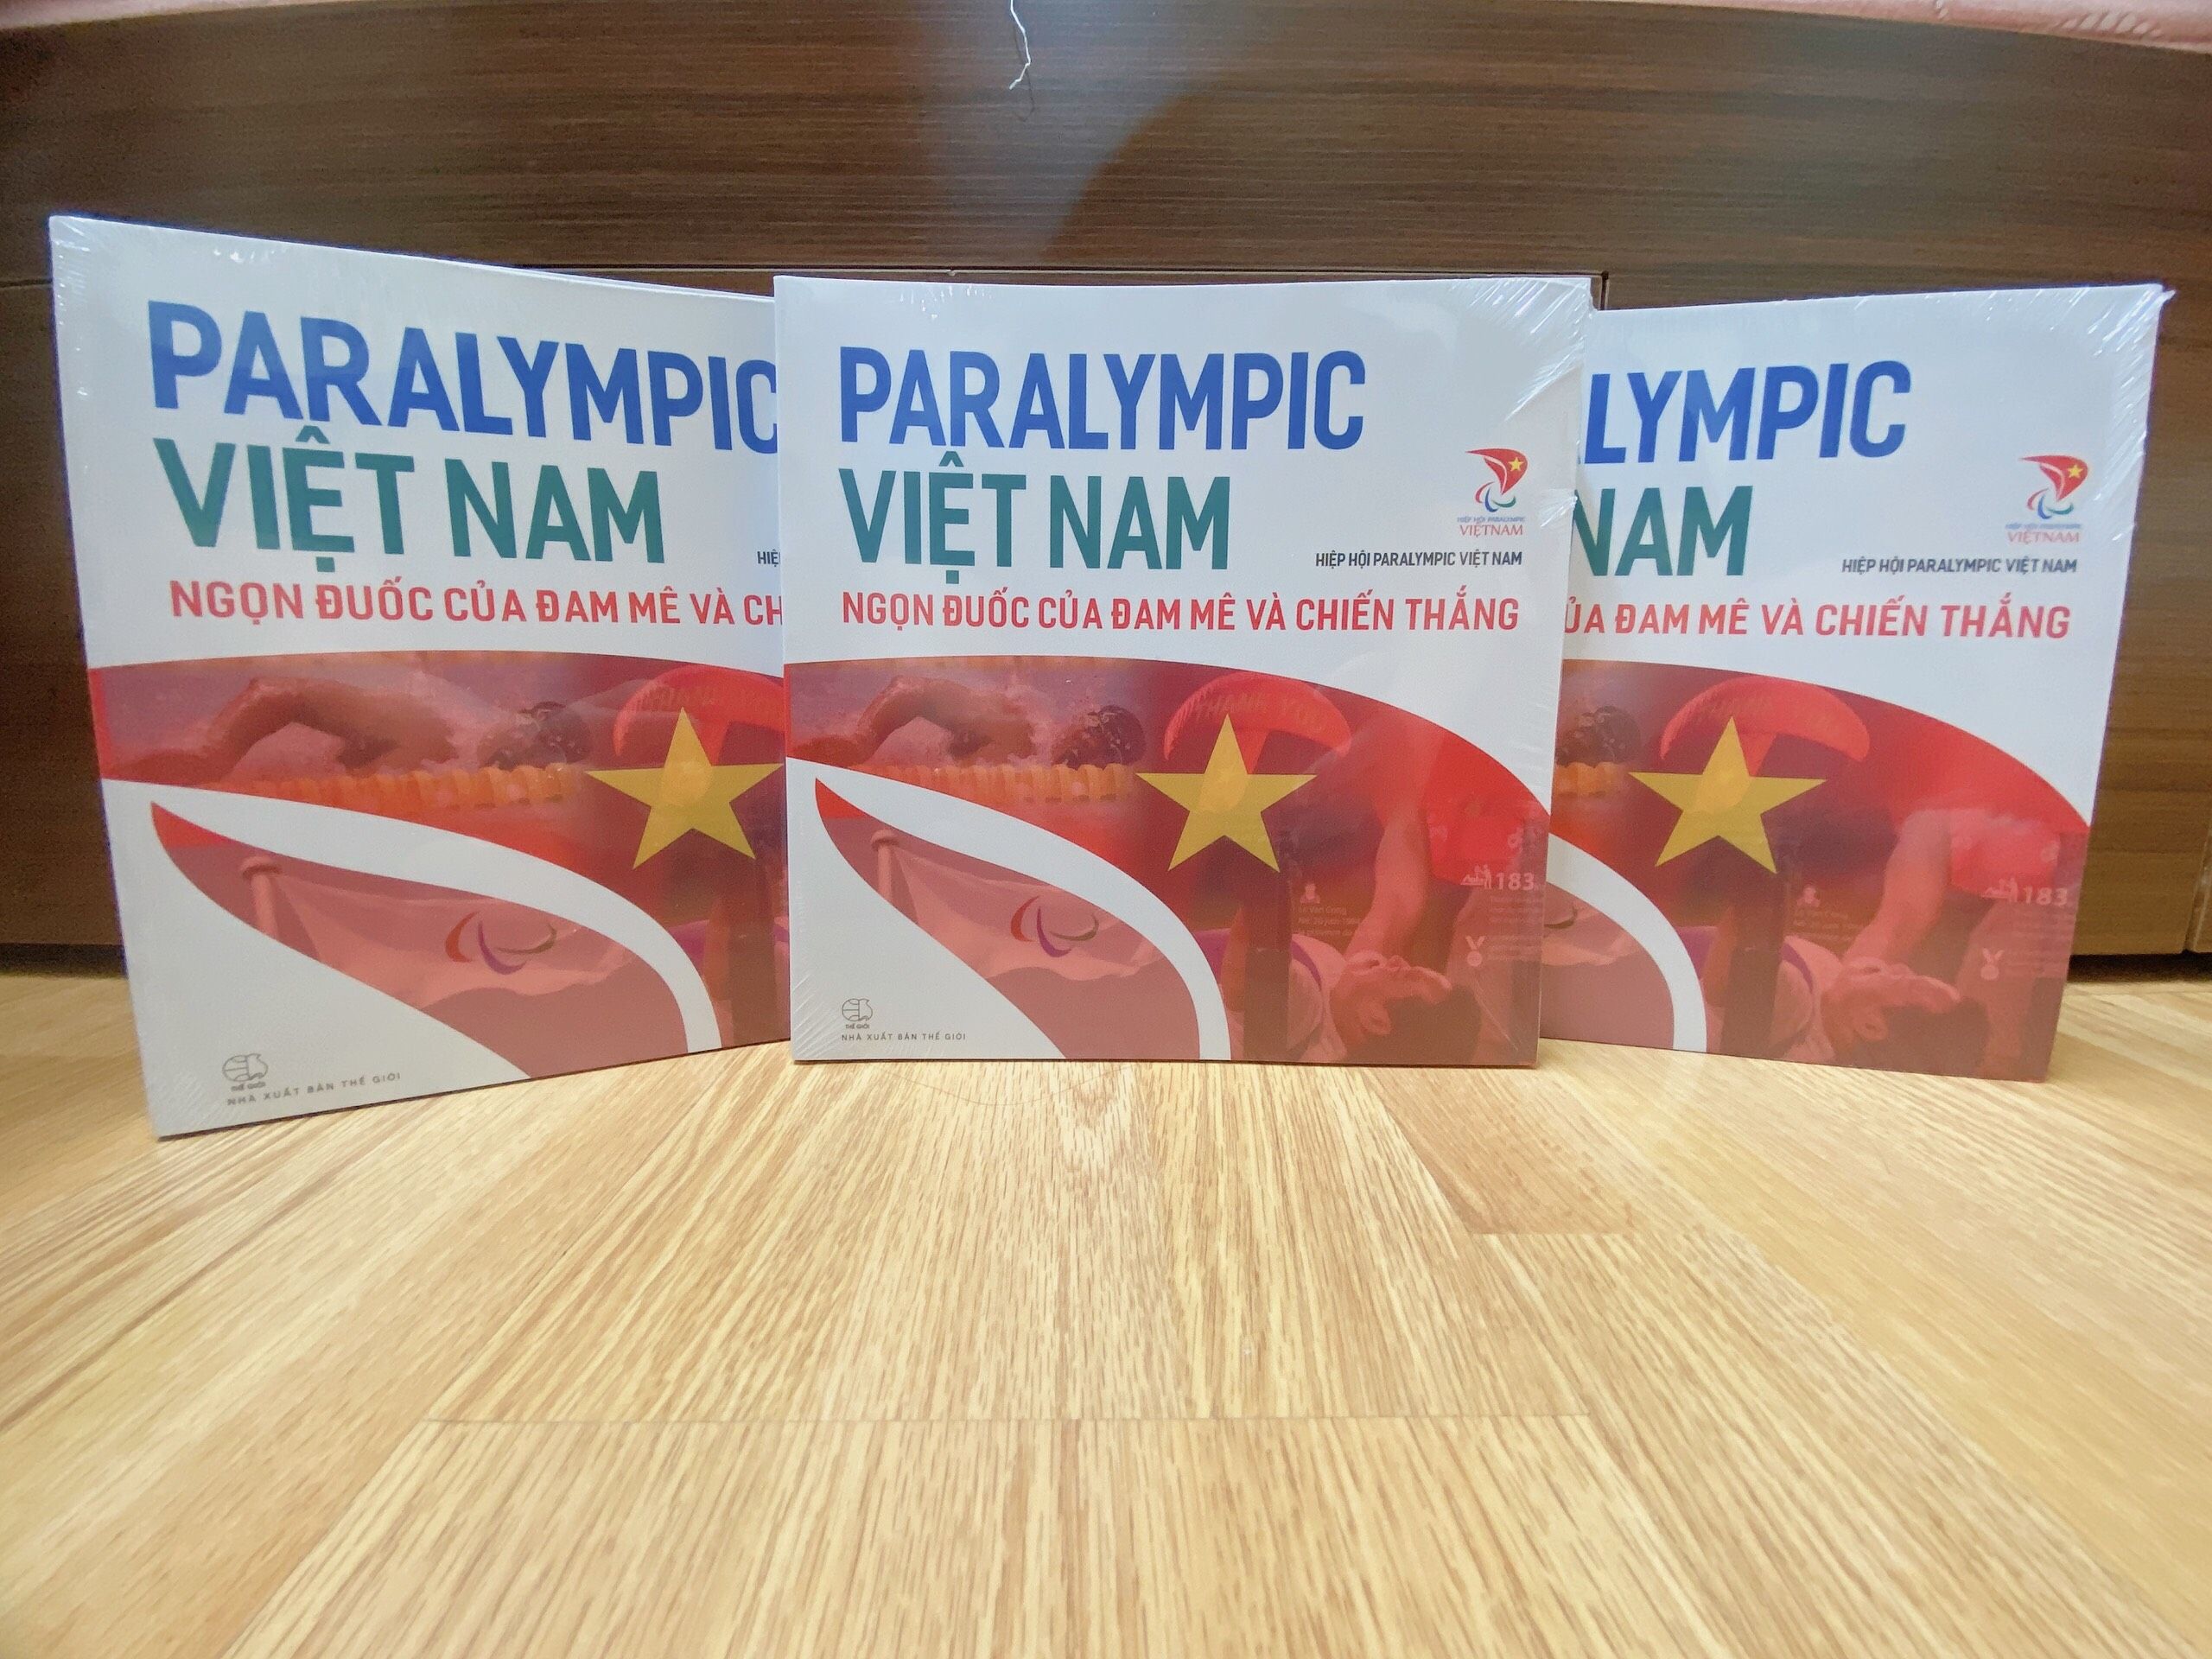 Hiệp hội Paralympic Việt Nam chính thức ra mắt cuốn sách